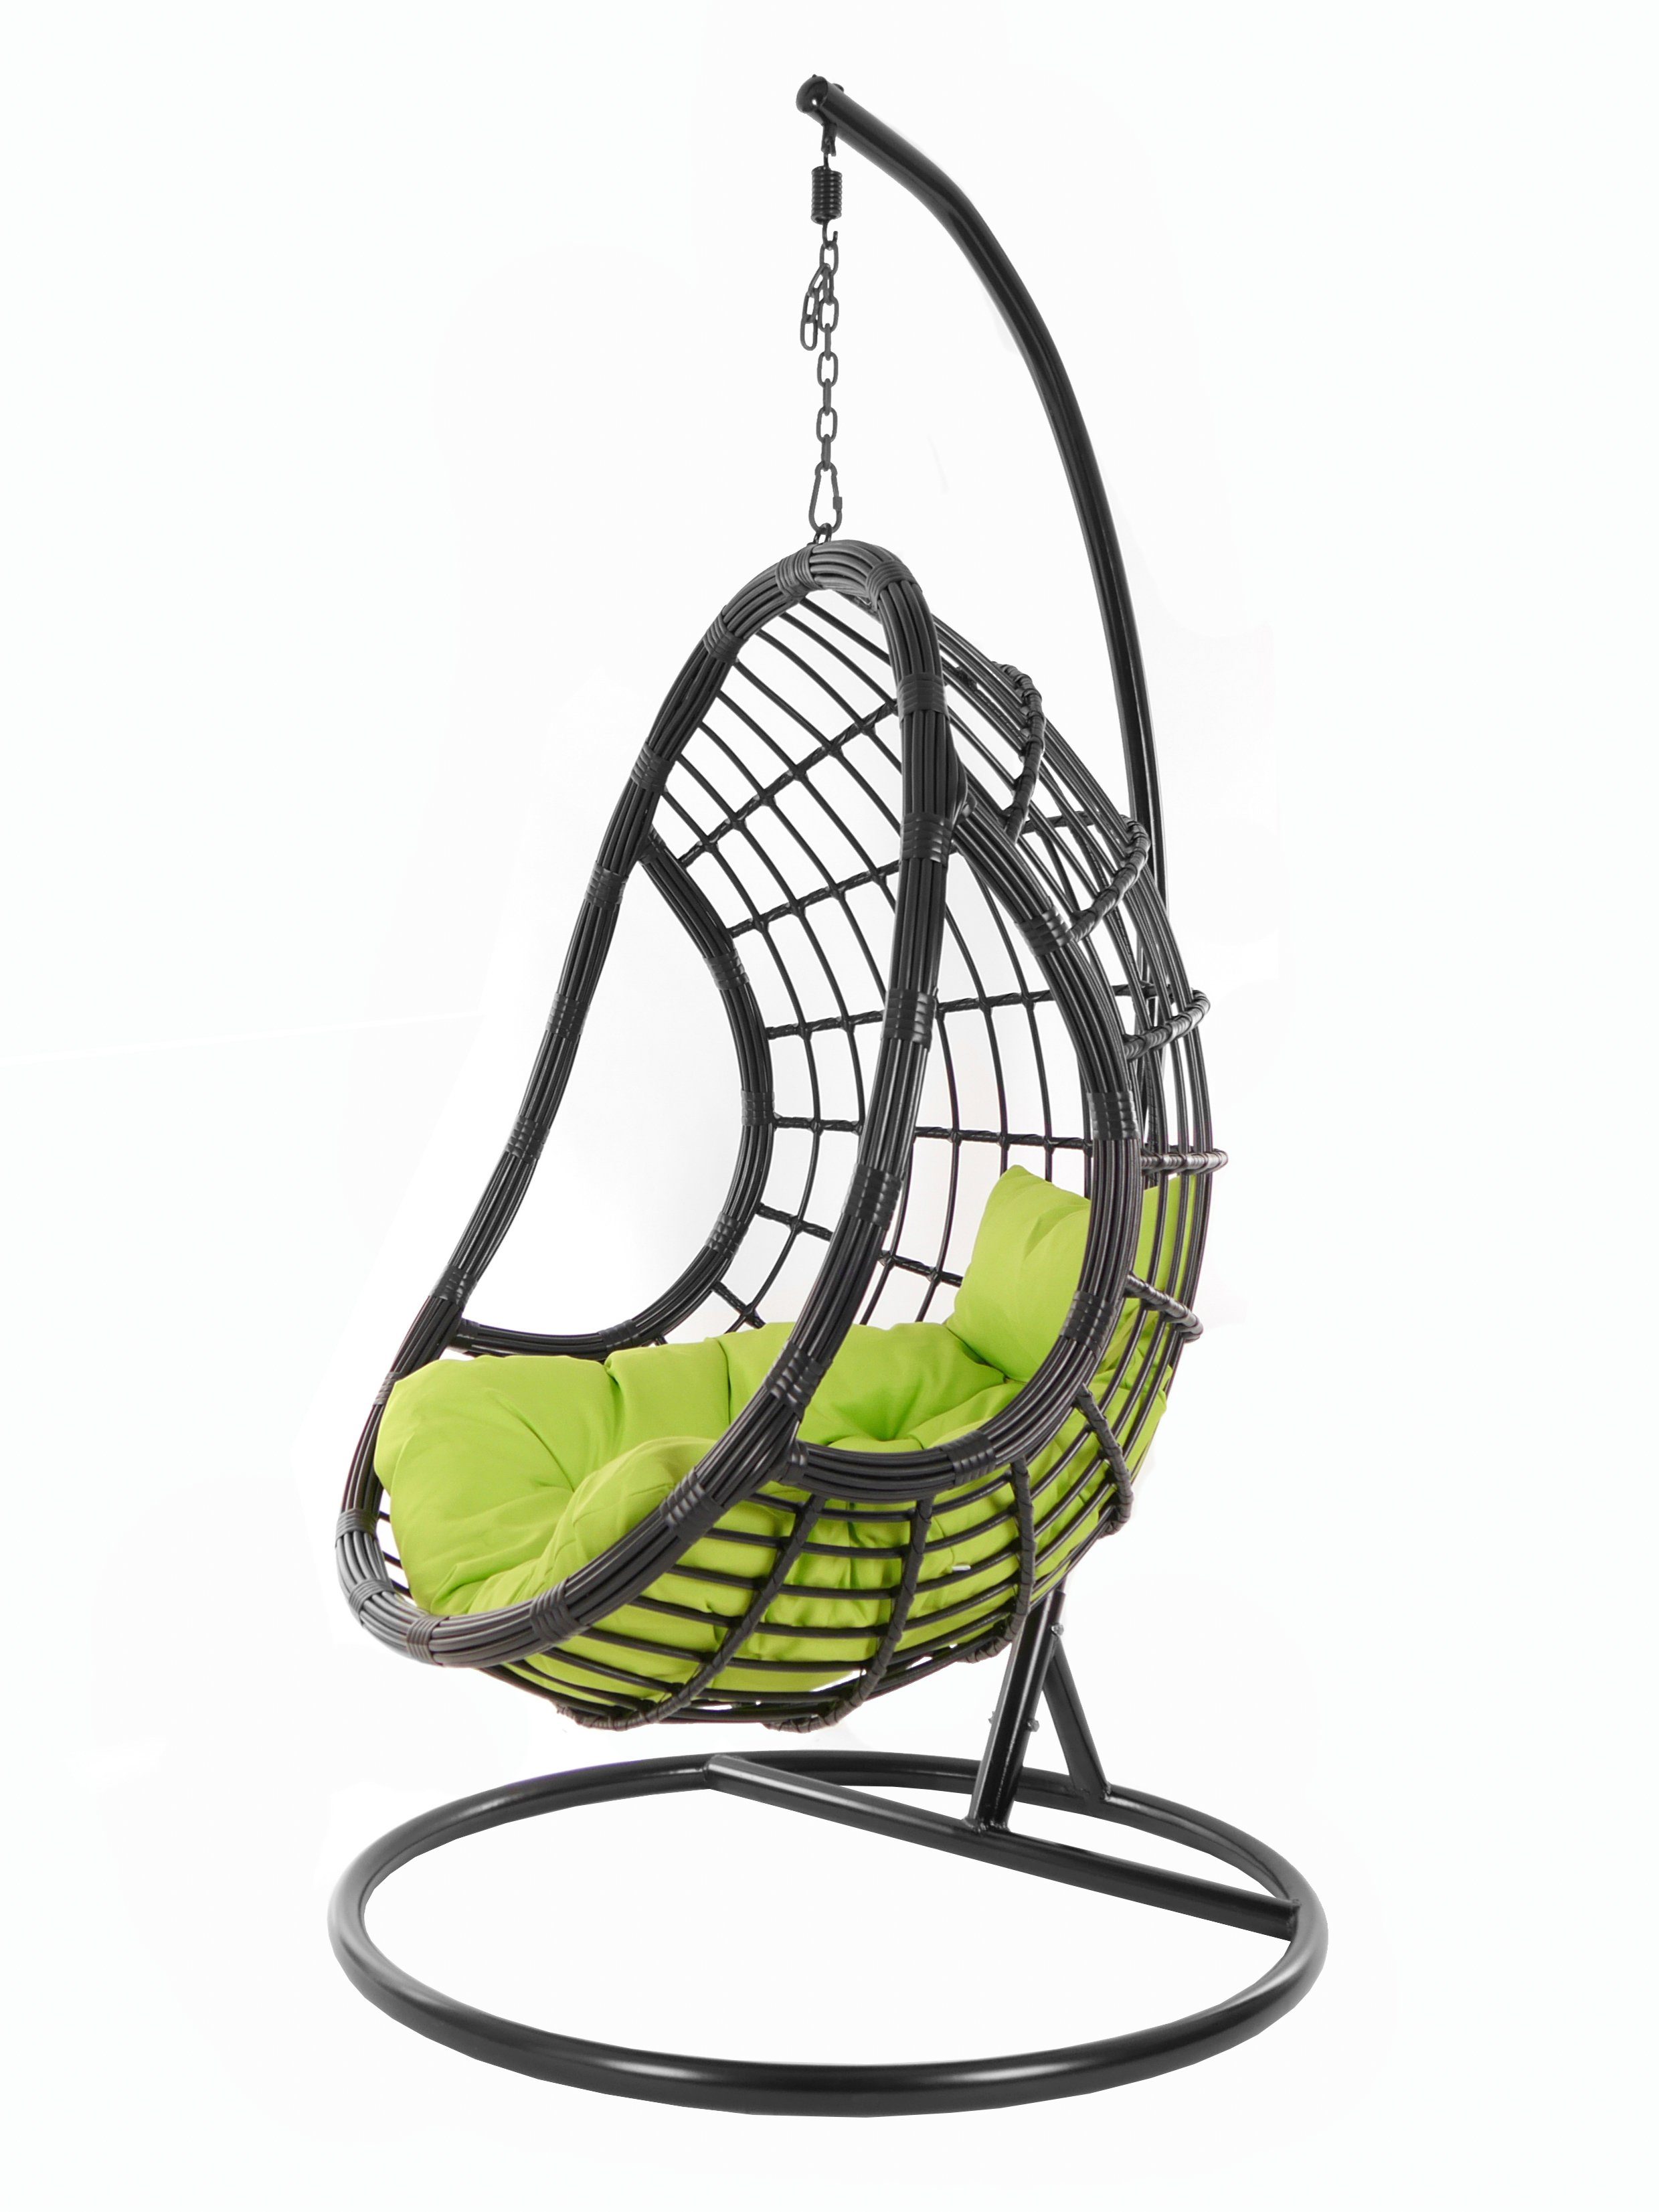 KIDEO Hängesessel Chair, (6068 Design Hängesessel Gestell PALMANOVA Schwebesessel, apfelgrün schwarz, black, Swing mit Loungemöbel, und apple green) Kissen, edles